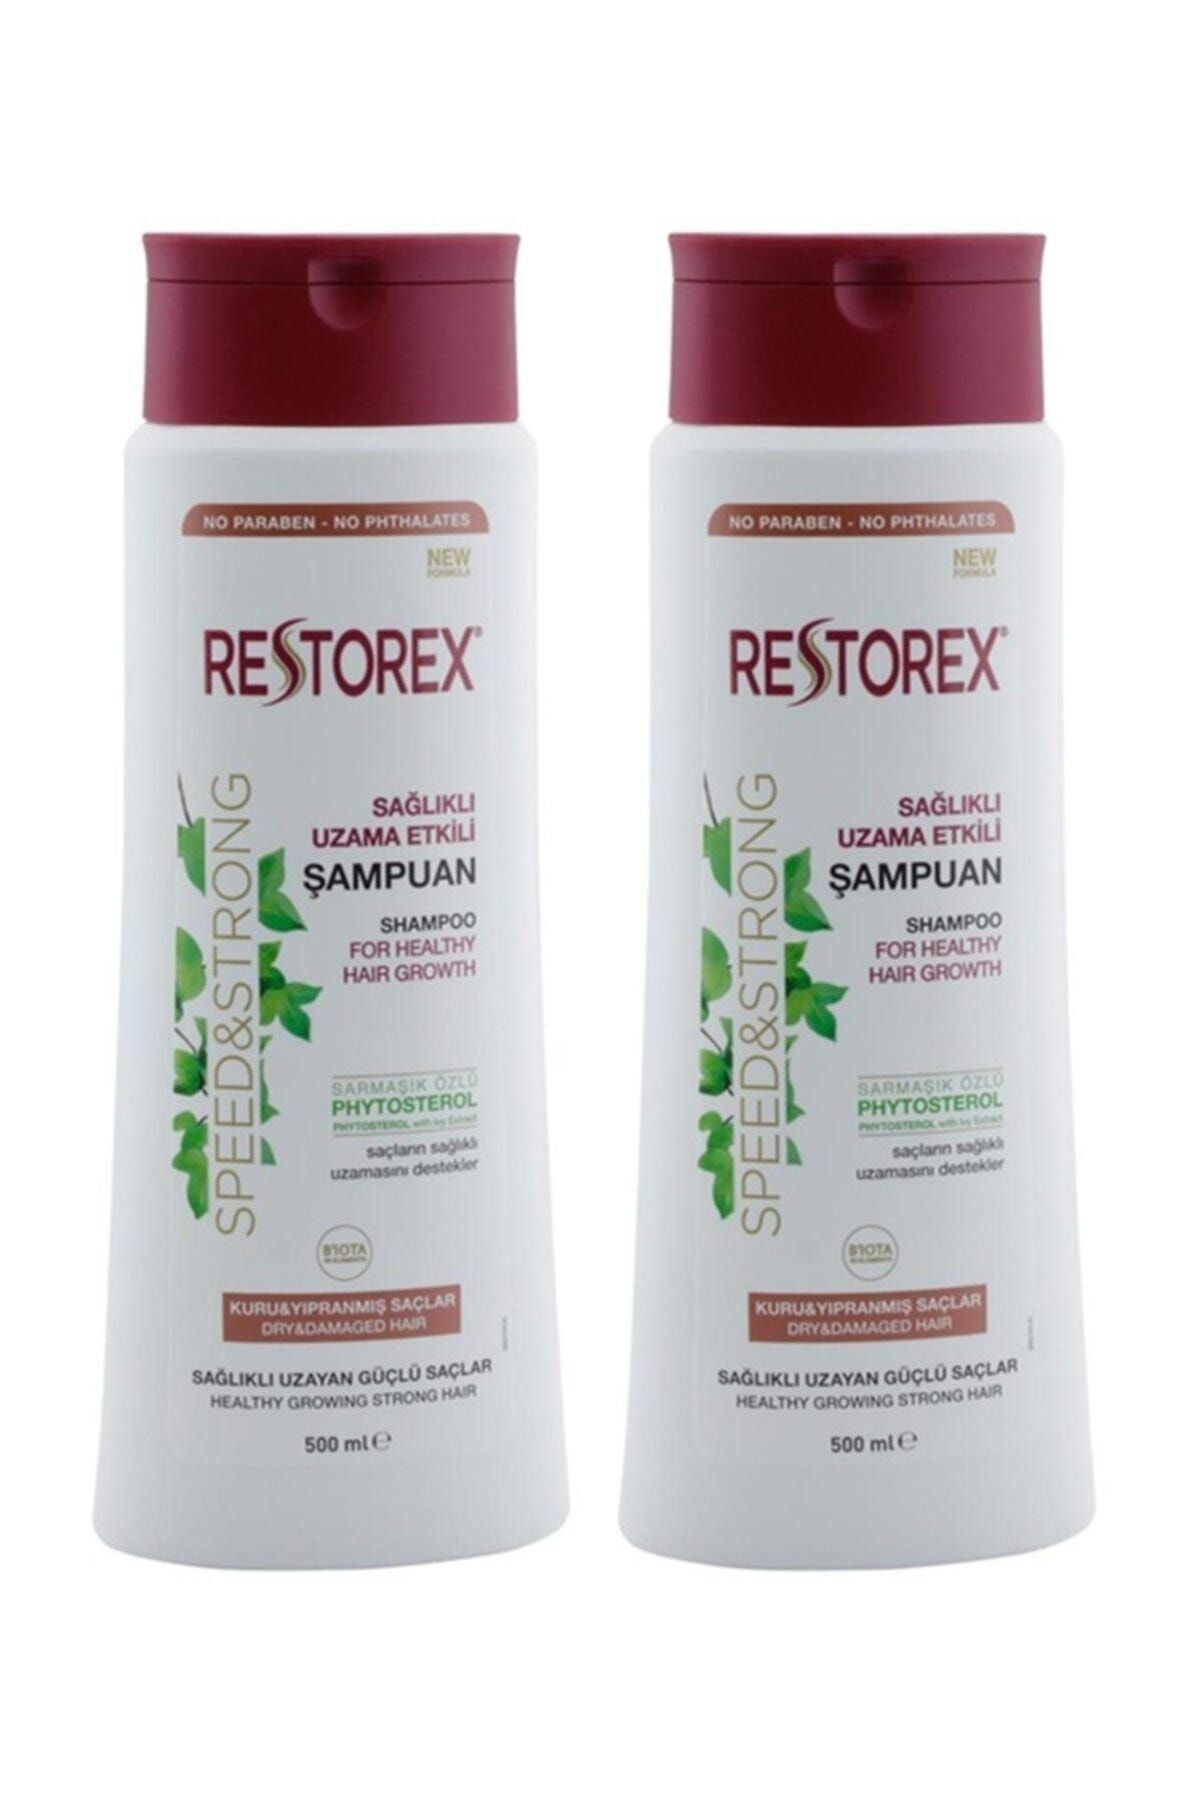 Restorex Sağlıklı Uzama Etkili Kuru Ve Yıpanmış Saçlar Için Sampuan 500 Ml X 2 Adet